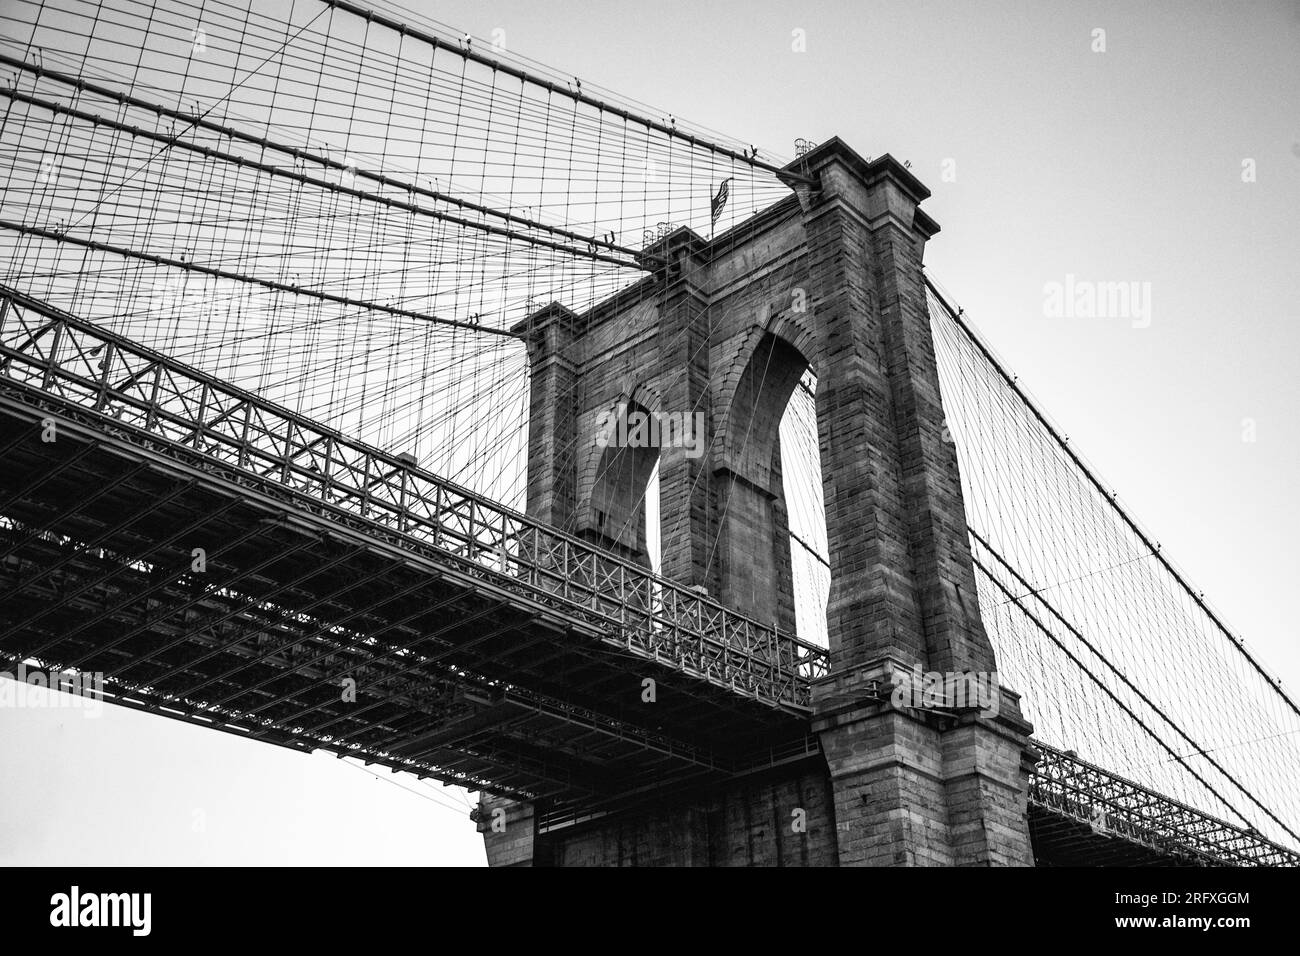 Erleben Sie den majestätischen Reiz der Brooklyn Bridge, ein architektonisches Wunderwerk am East River in New York City. Erleben Sie die Schönheit urbaner Engi Stockfoto